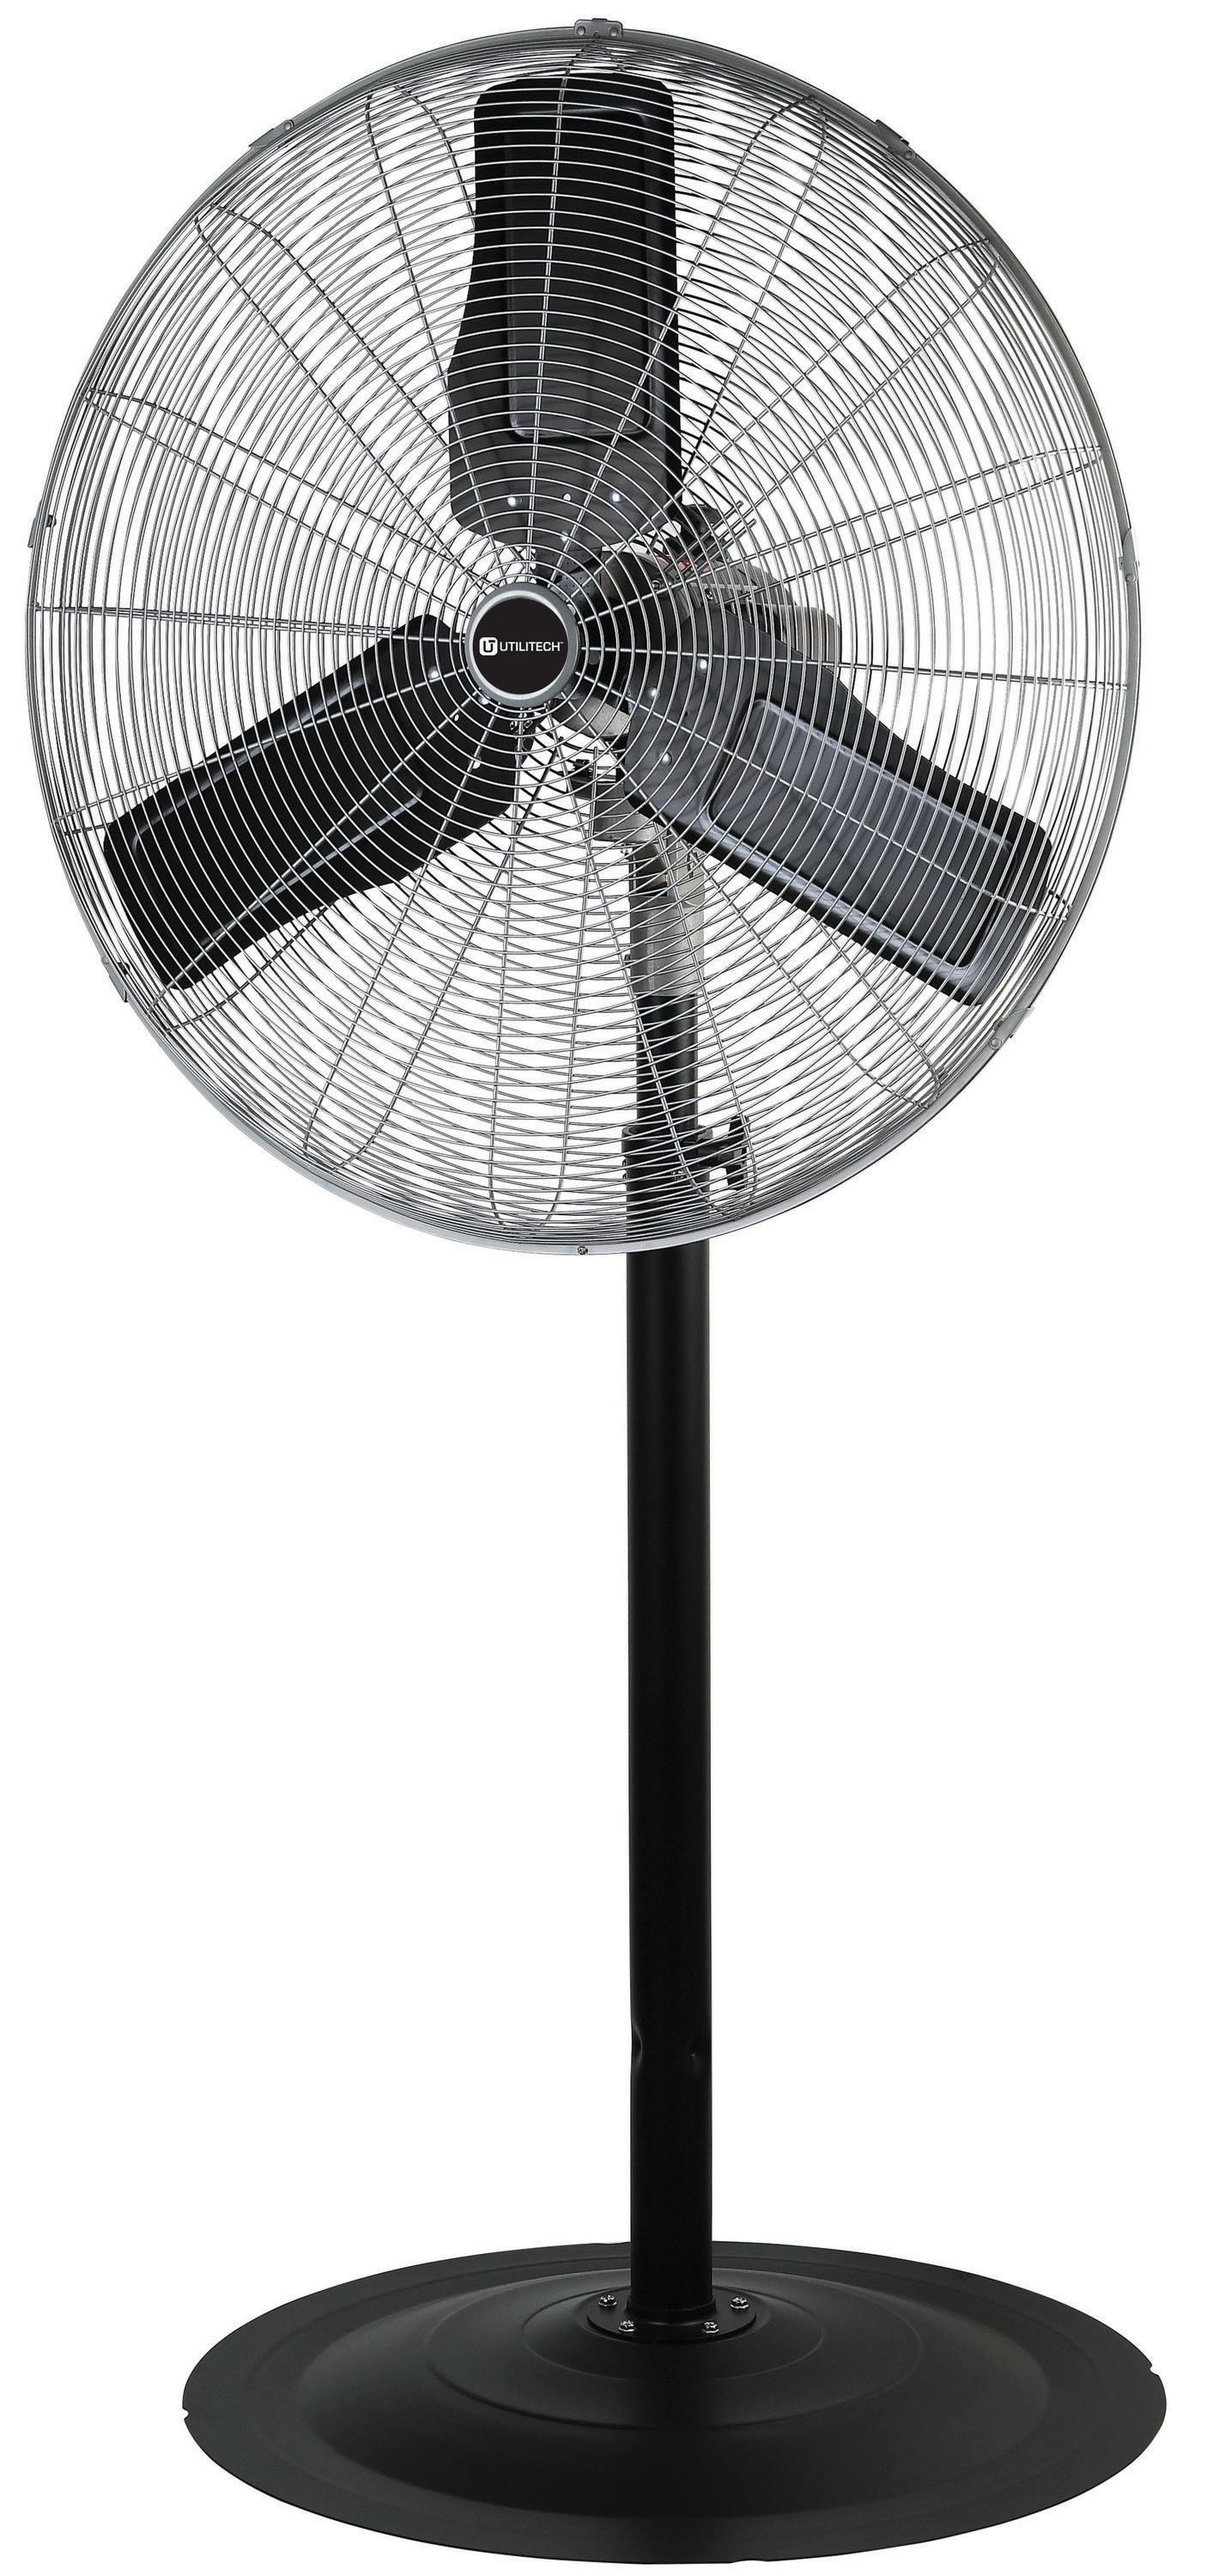 iLIVING Pedestal Fan 30 In Adjustable Height Electric Commercial Industrial Fan 